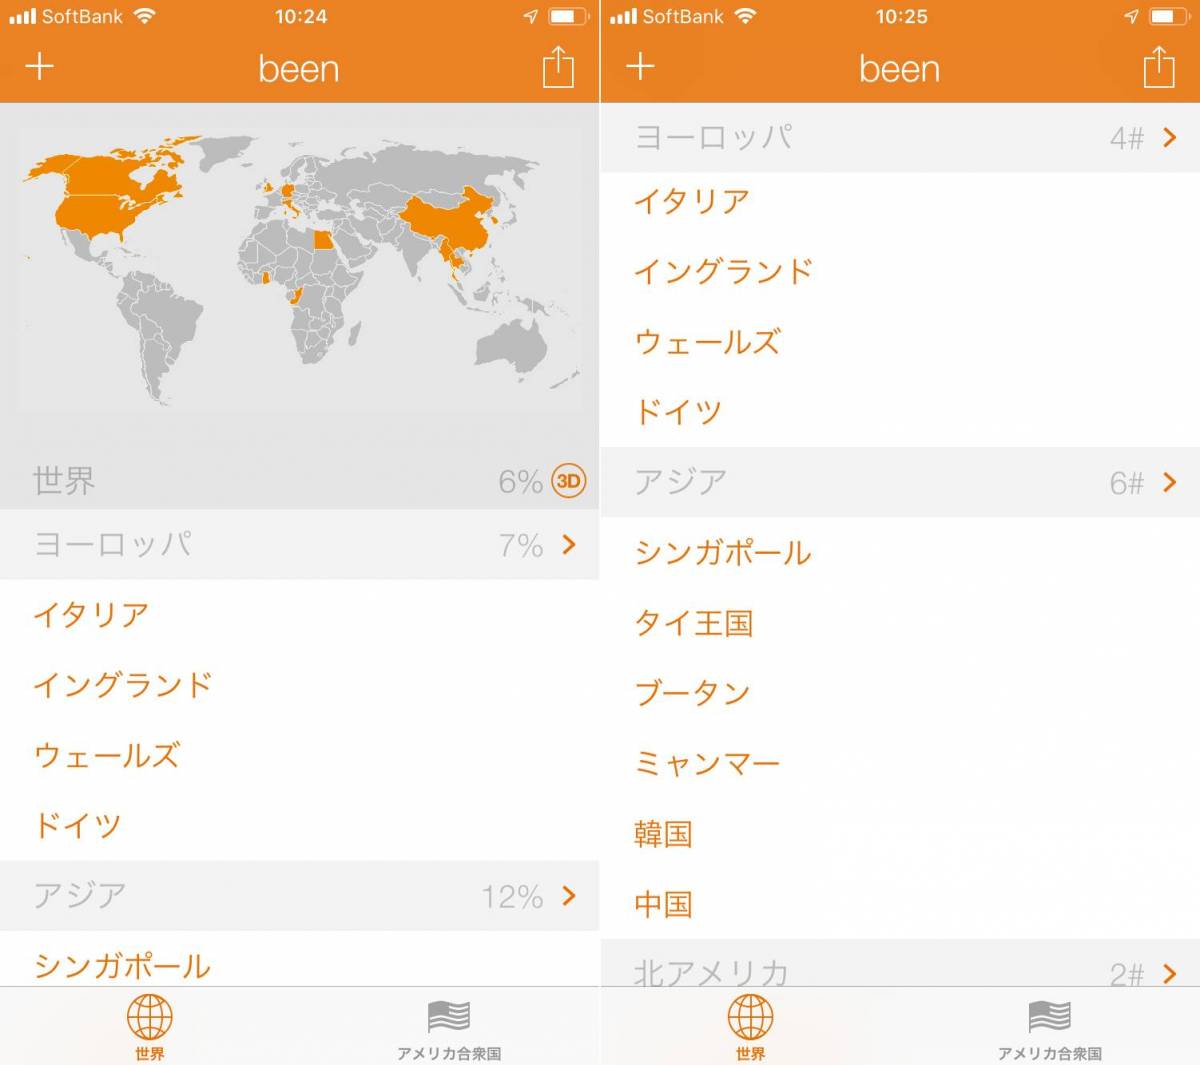 海外旅行で便利 オフライン対応の無料アプリおすすめ14選 ナビや会話の助けに Appliv Topics